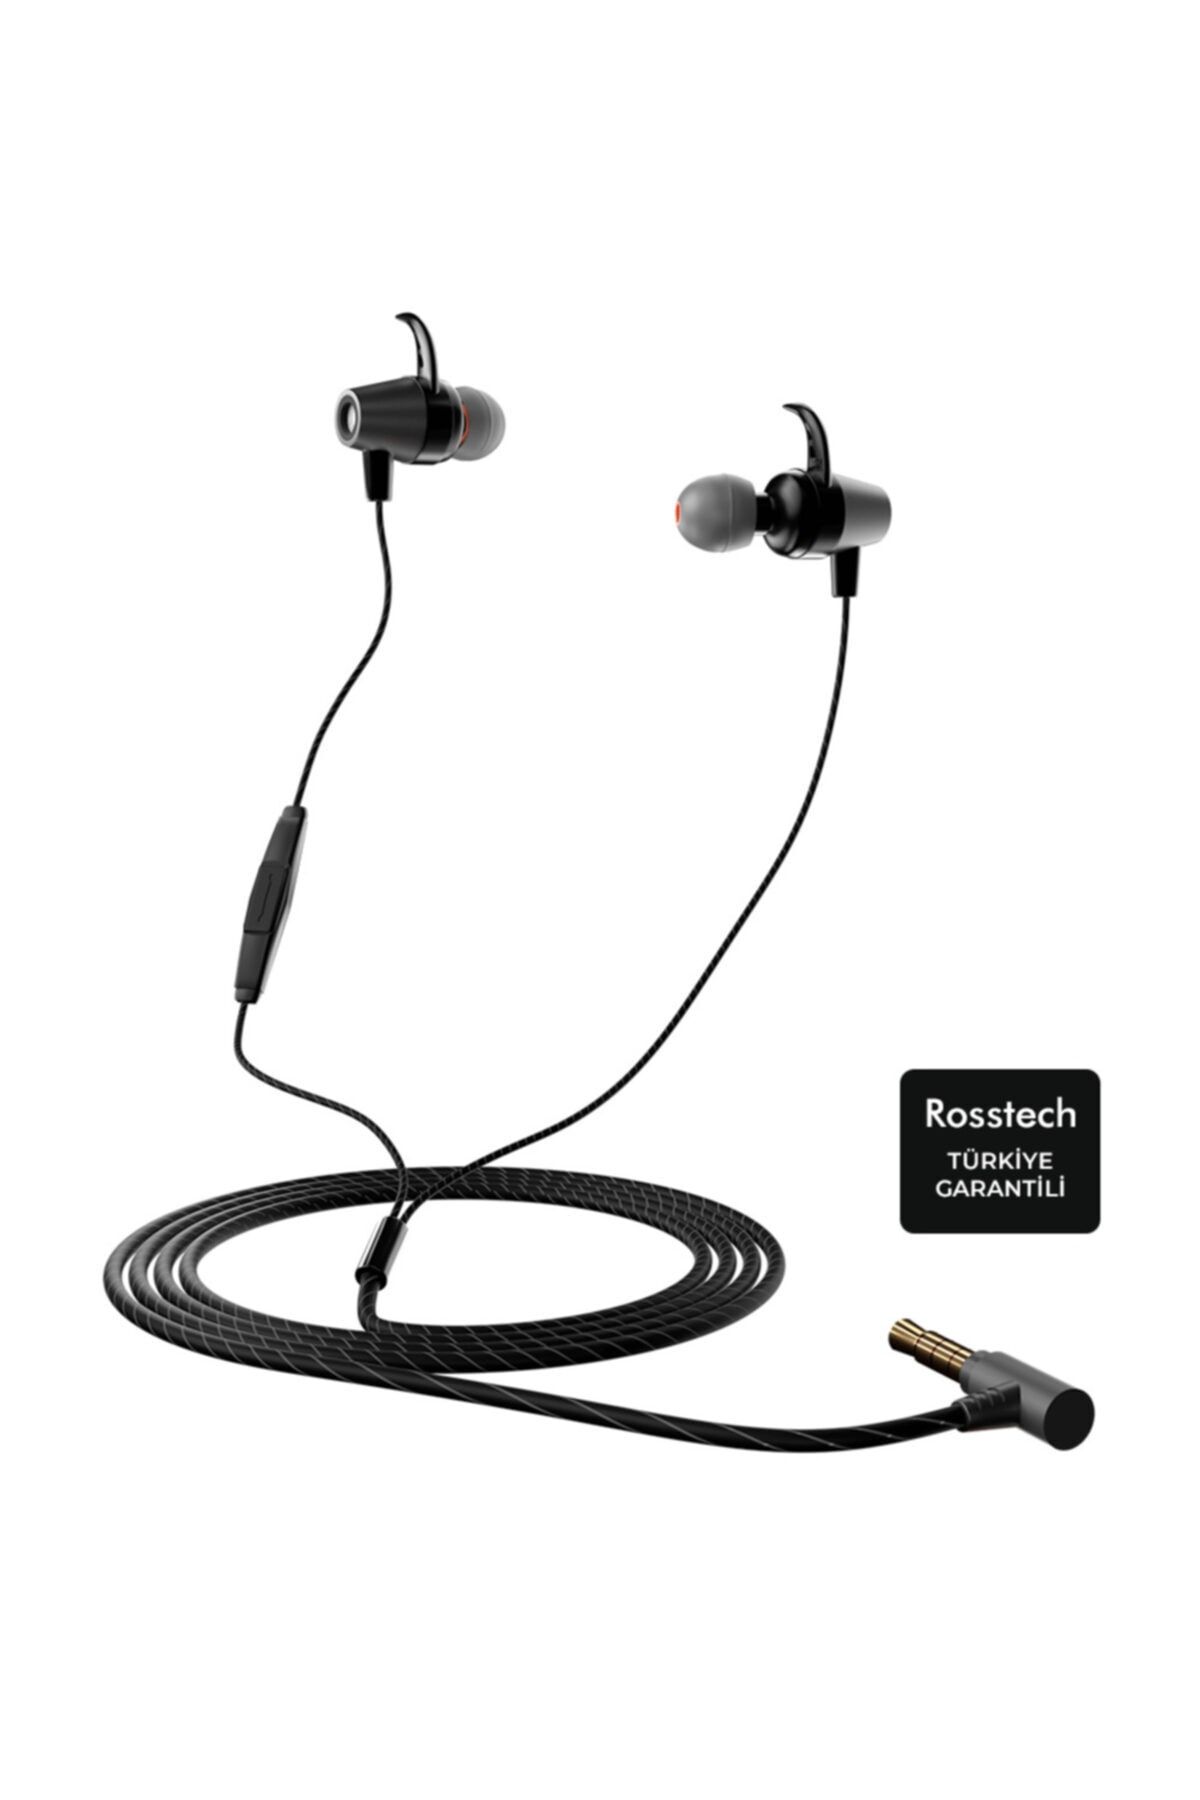 ROSSTECH Rs-90 Pro Anc Mikrofonlu Metal Tasarım Kablolu Kulak Içi Kulaklık Ve Özel Taşıma Çantası